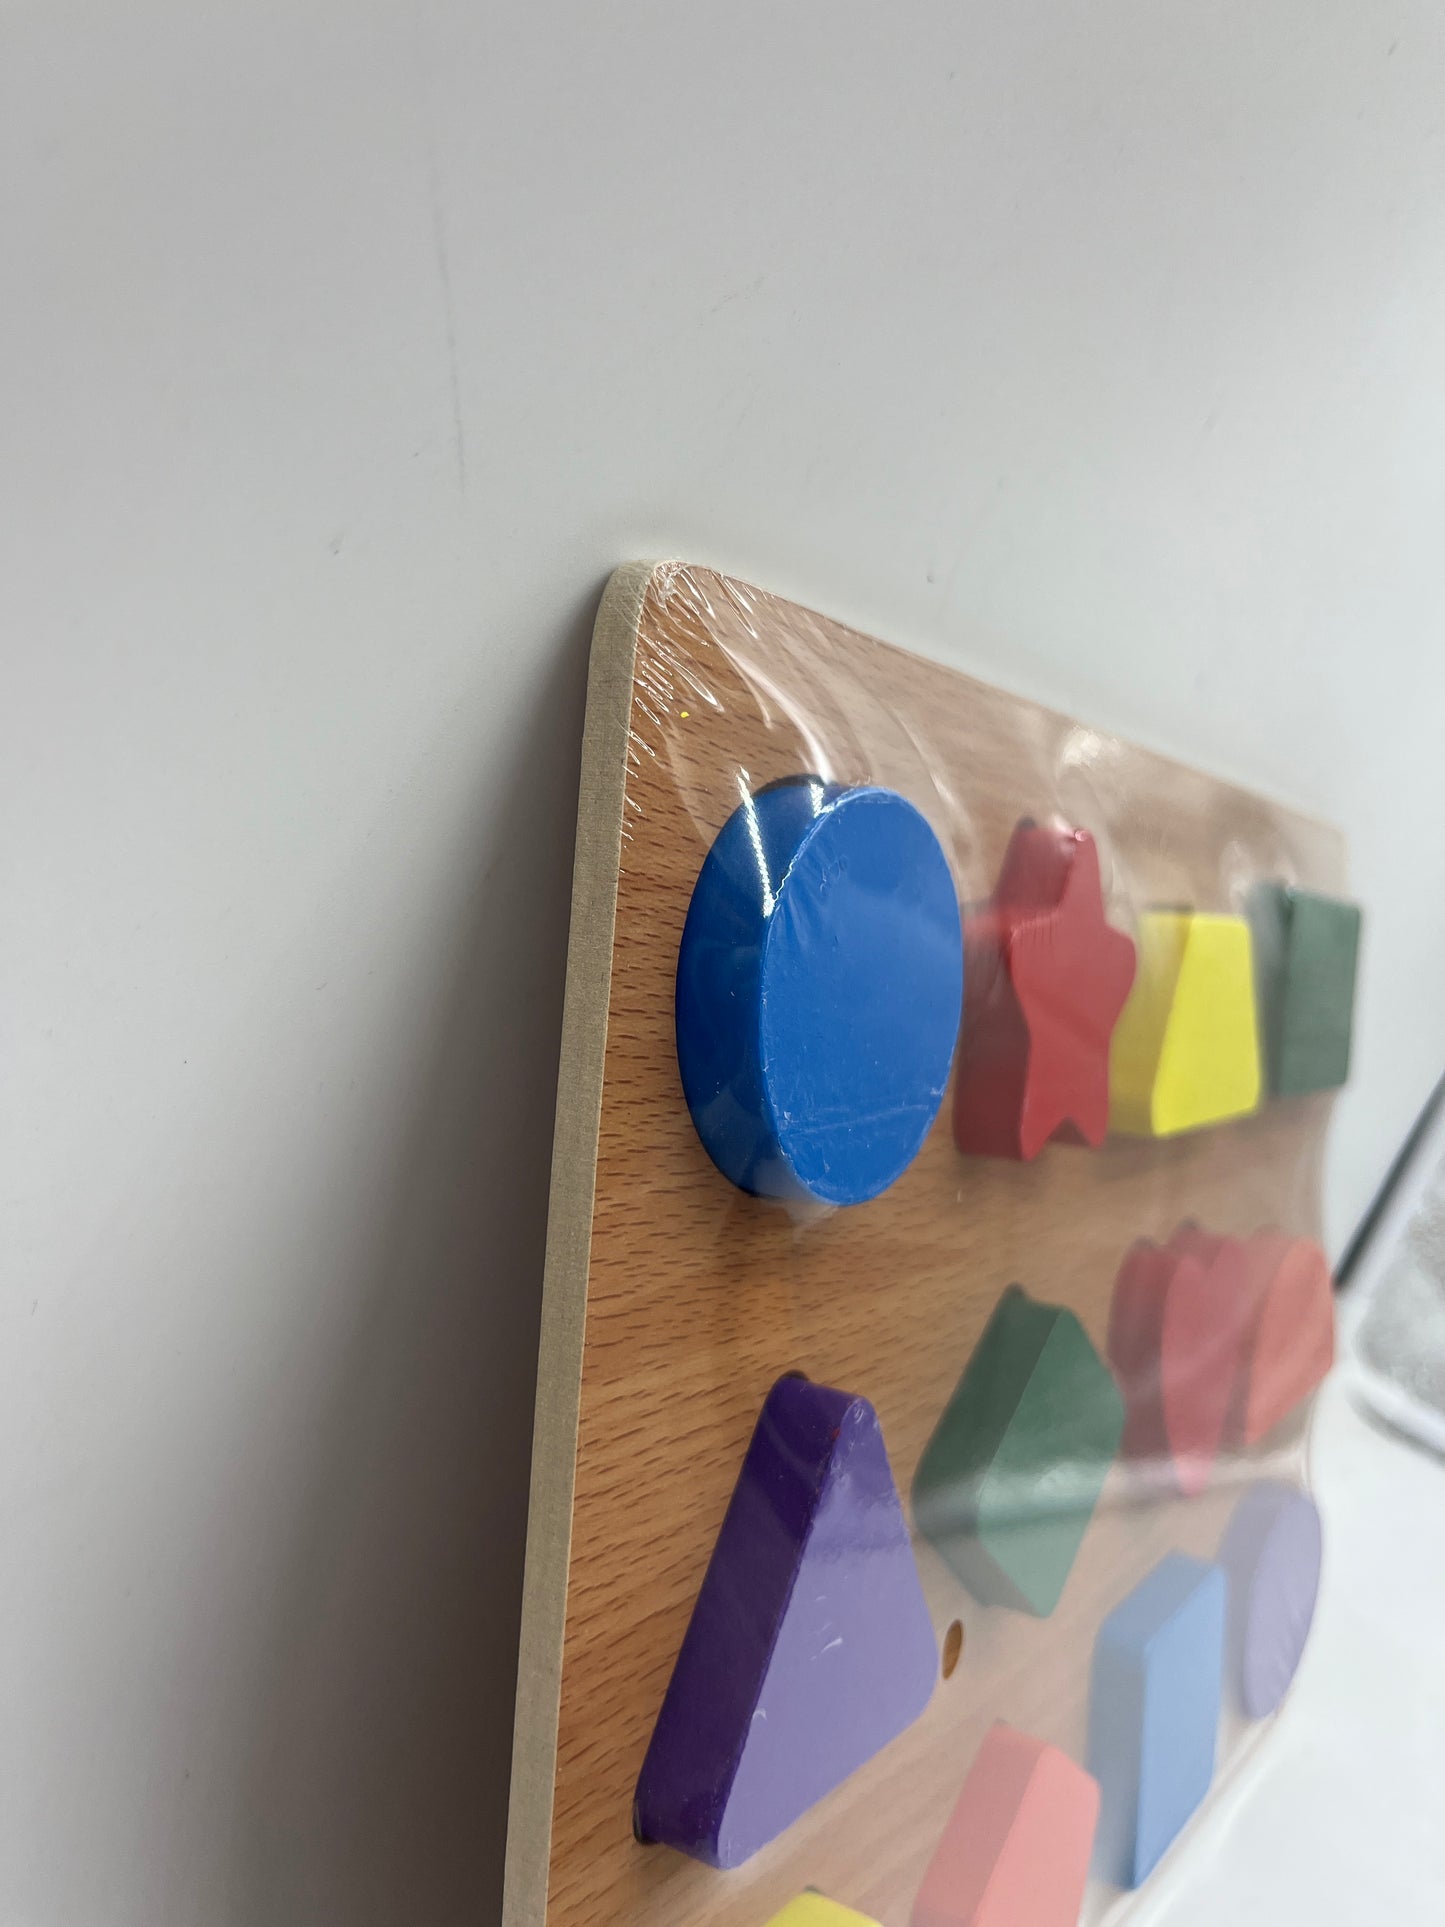 Jouet jeu activités apprentissage 
Puzzle en bois Type Montessori J’apprends les formes et les couleurs avec ces pièces en relief Neuf